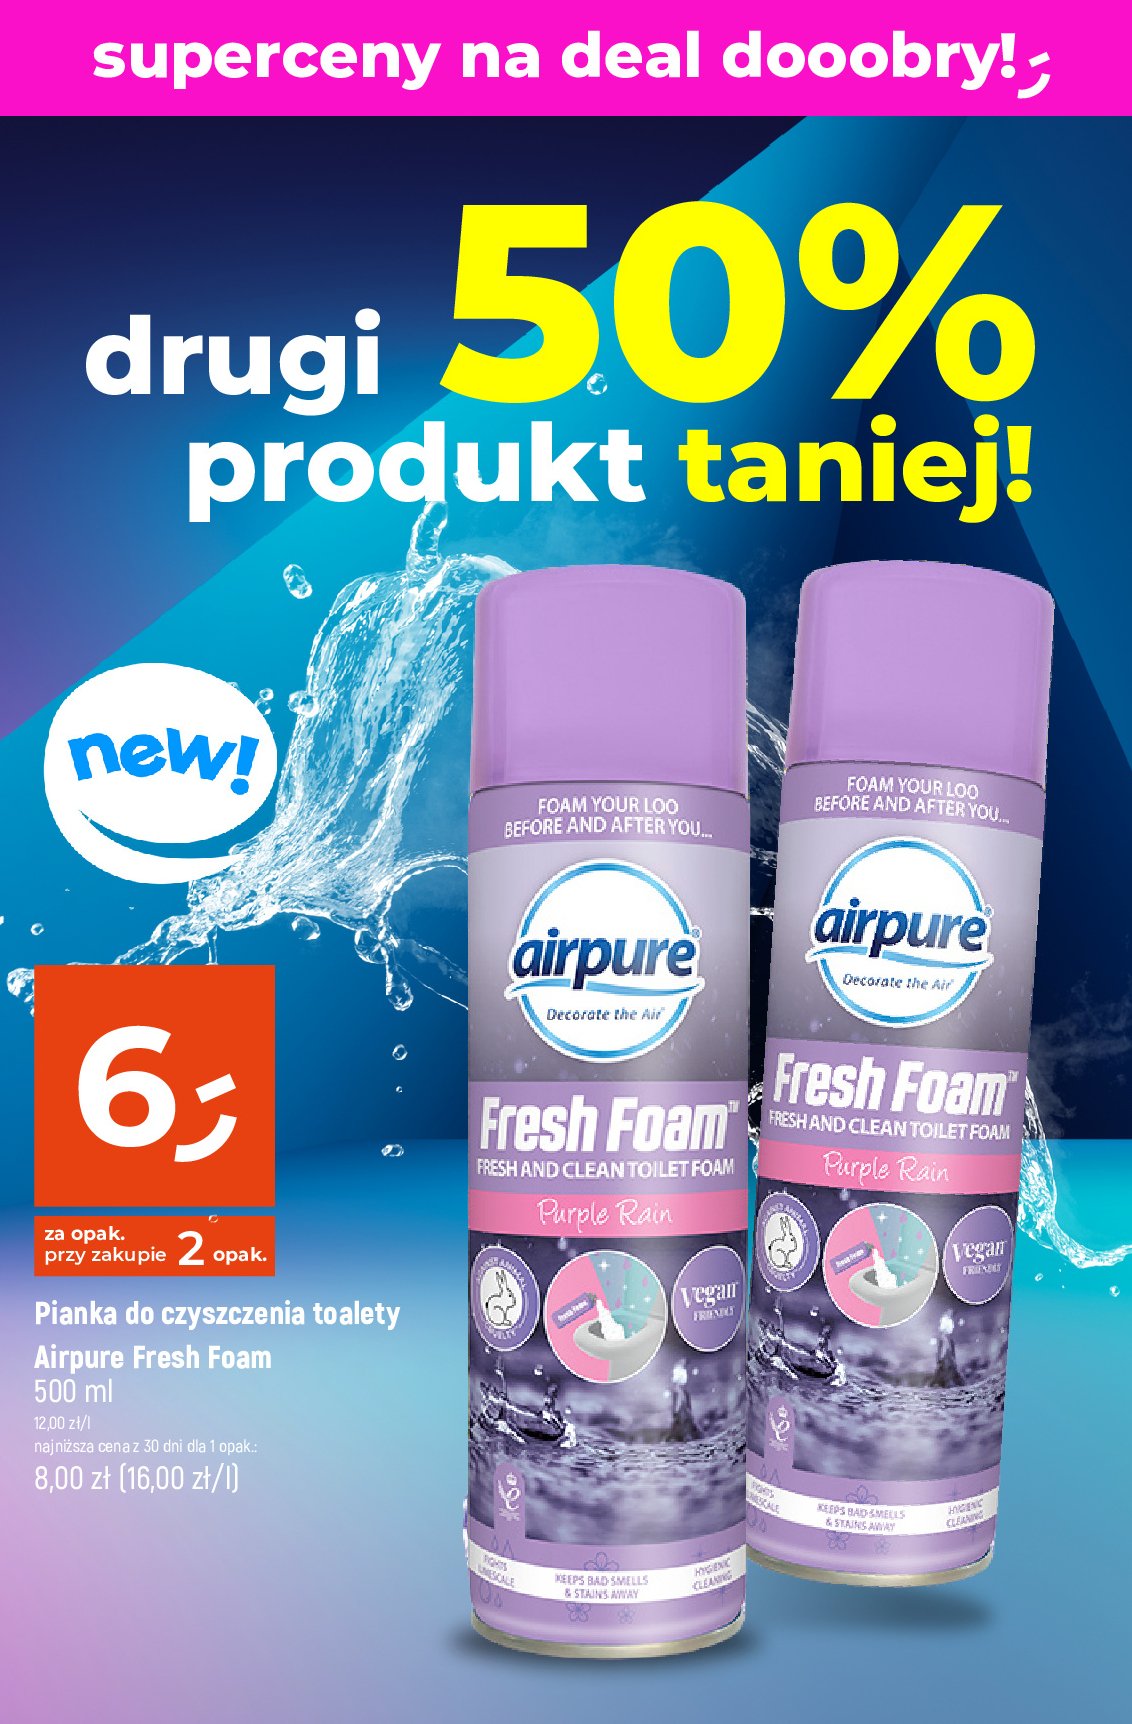 Pianka do czyszczenia toalet purple rain Airpure promocja